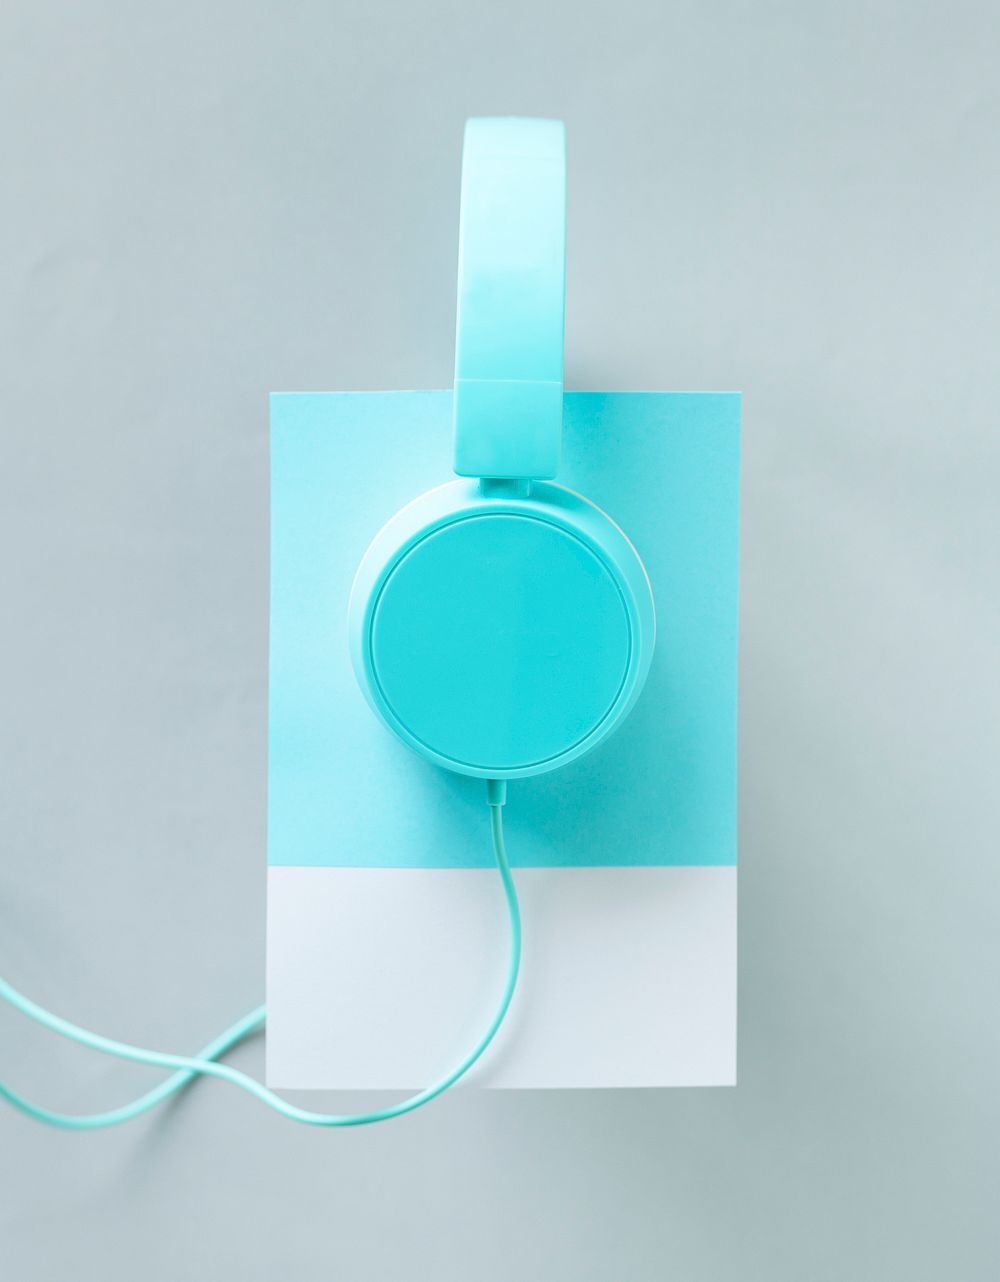 Paper craft art of headphones